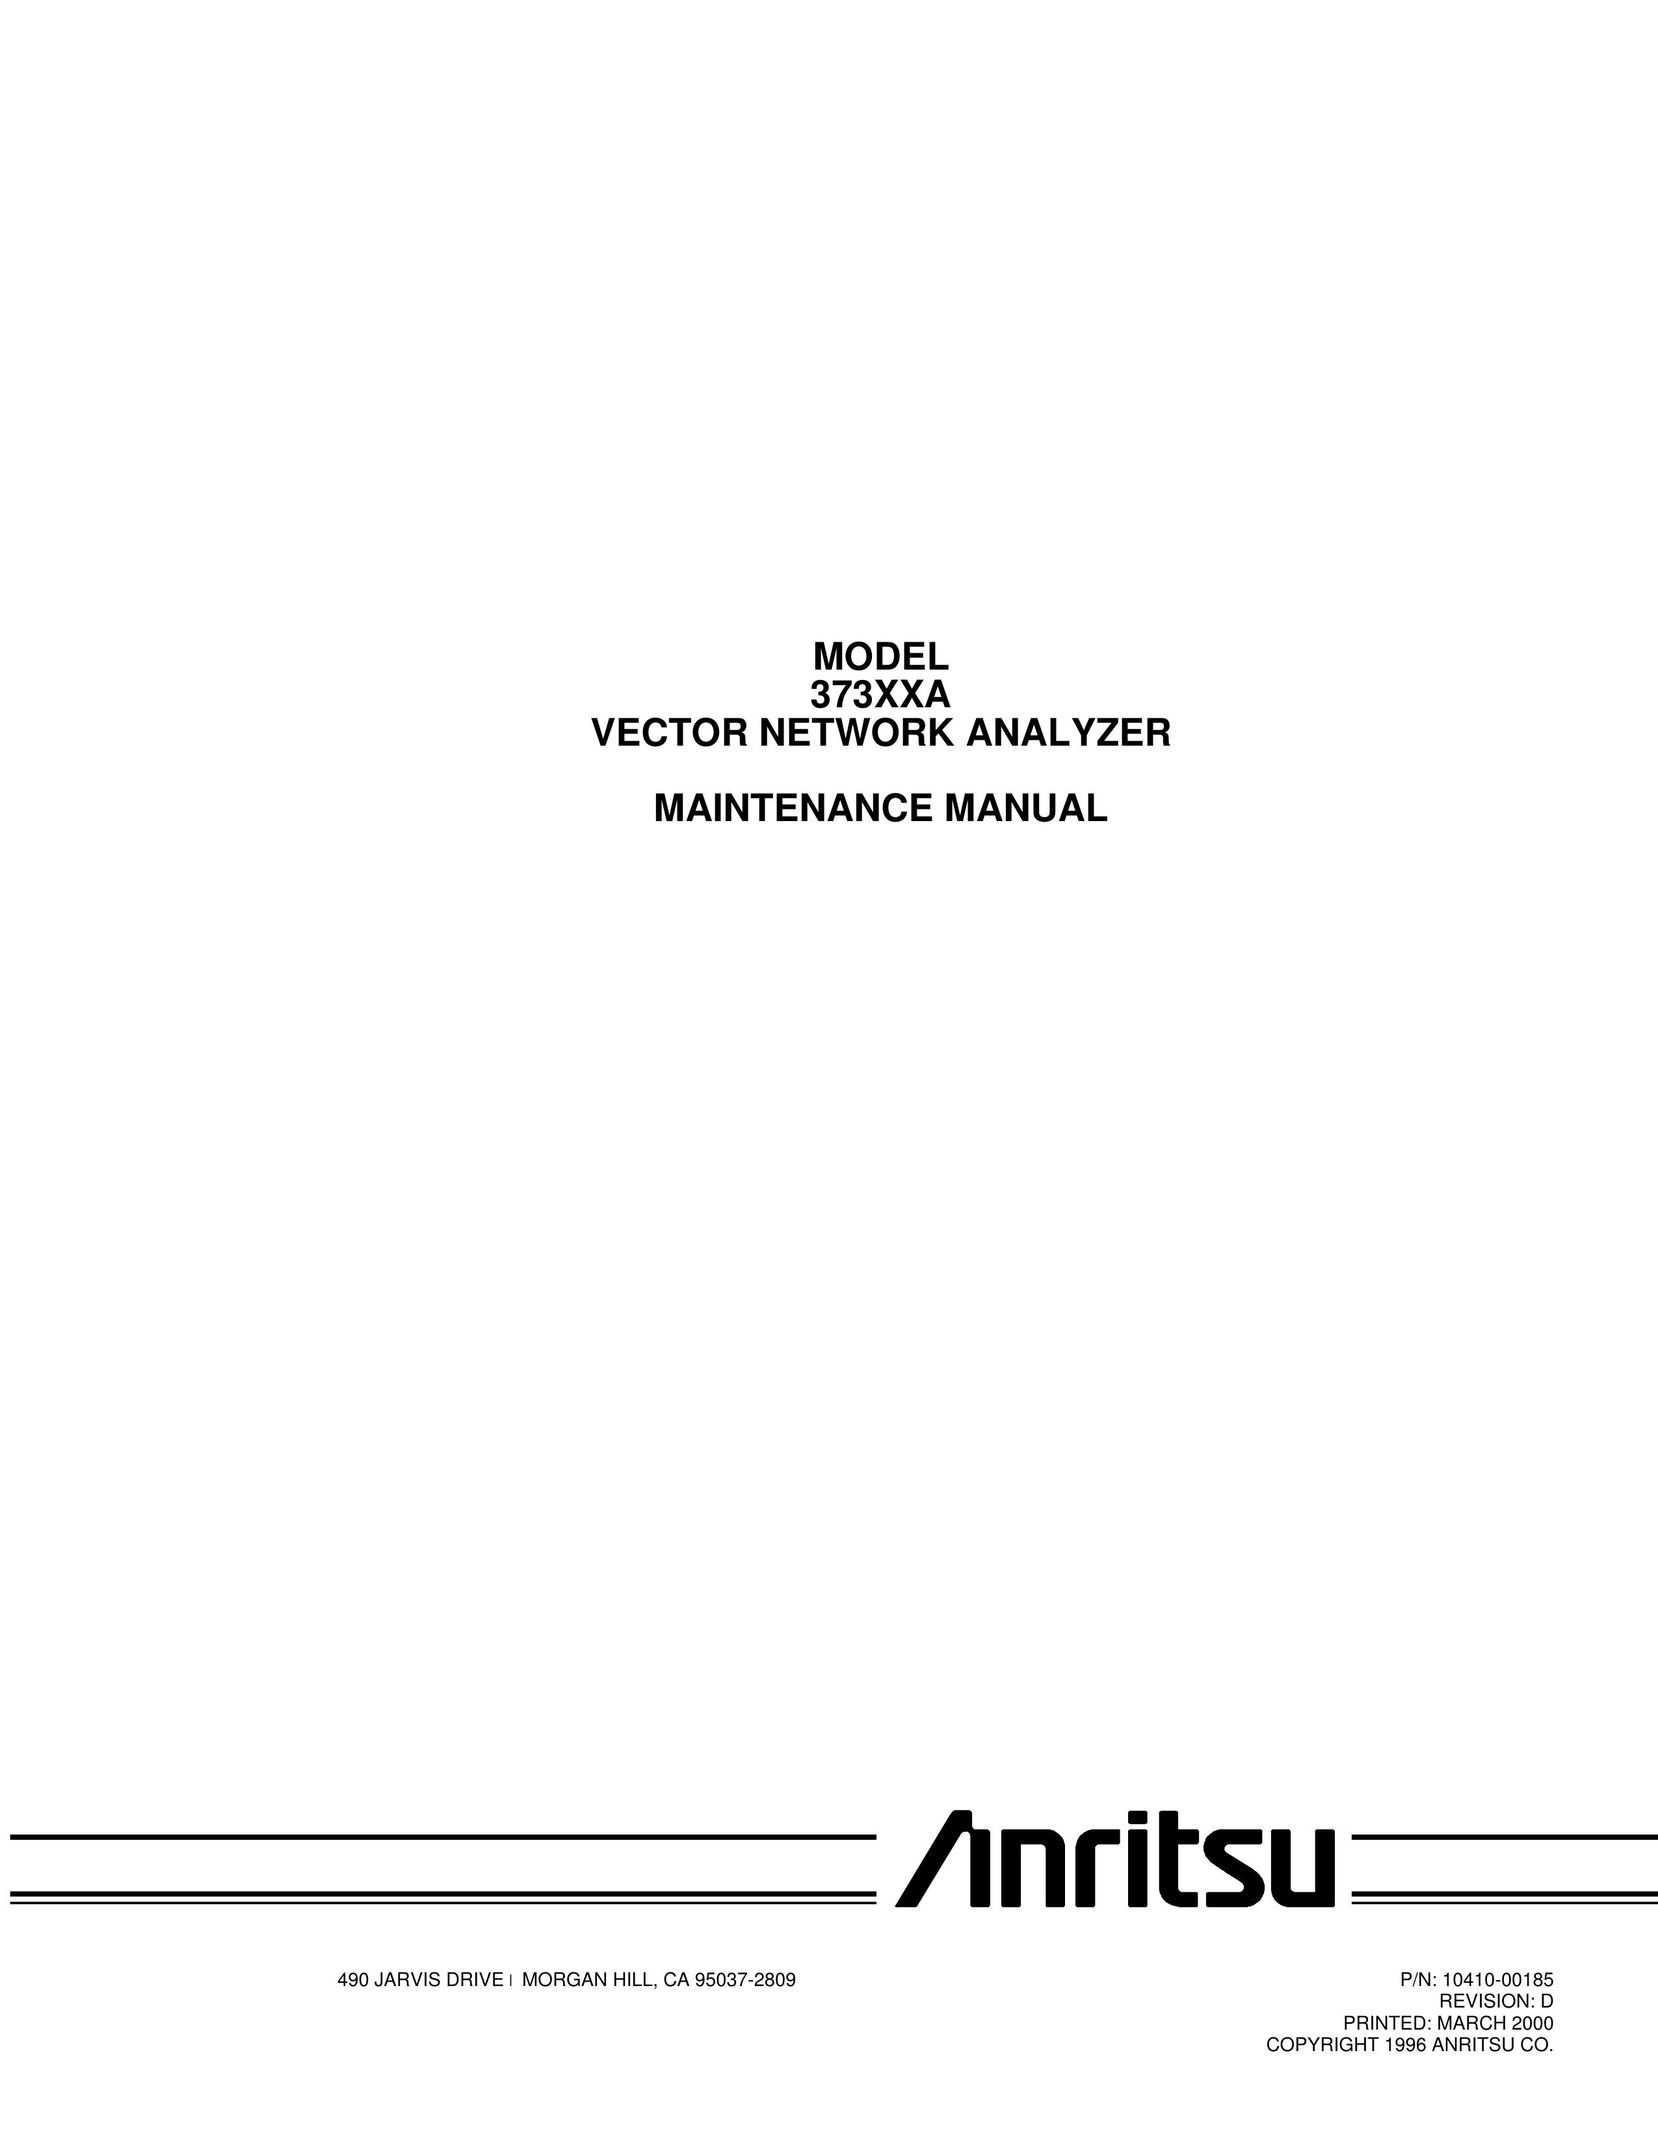 Anritsu 373XXA Network Router User Manual